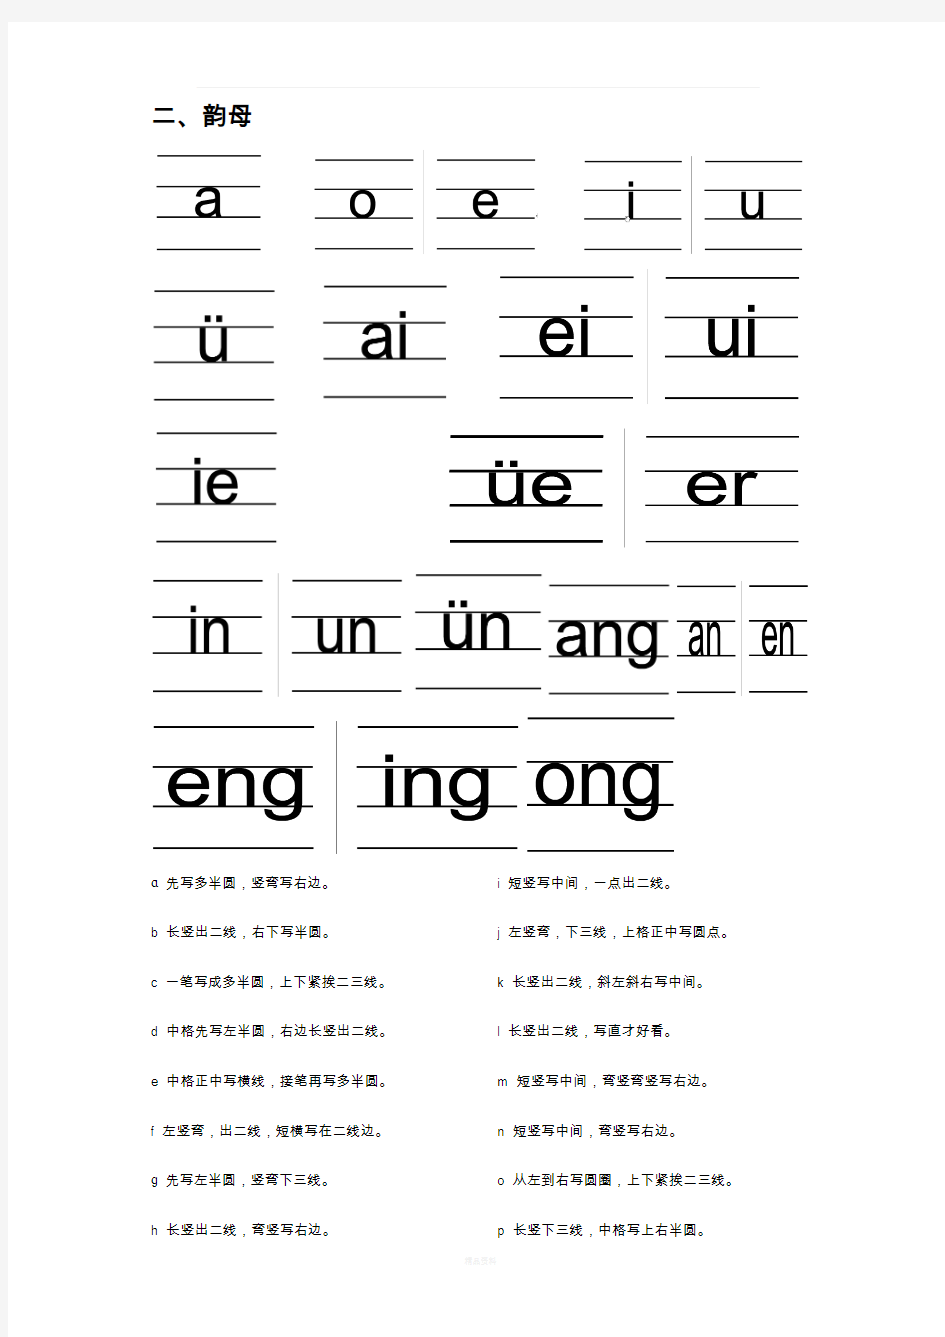 汉语拼音的书写格式(四线三格)91731